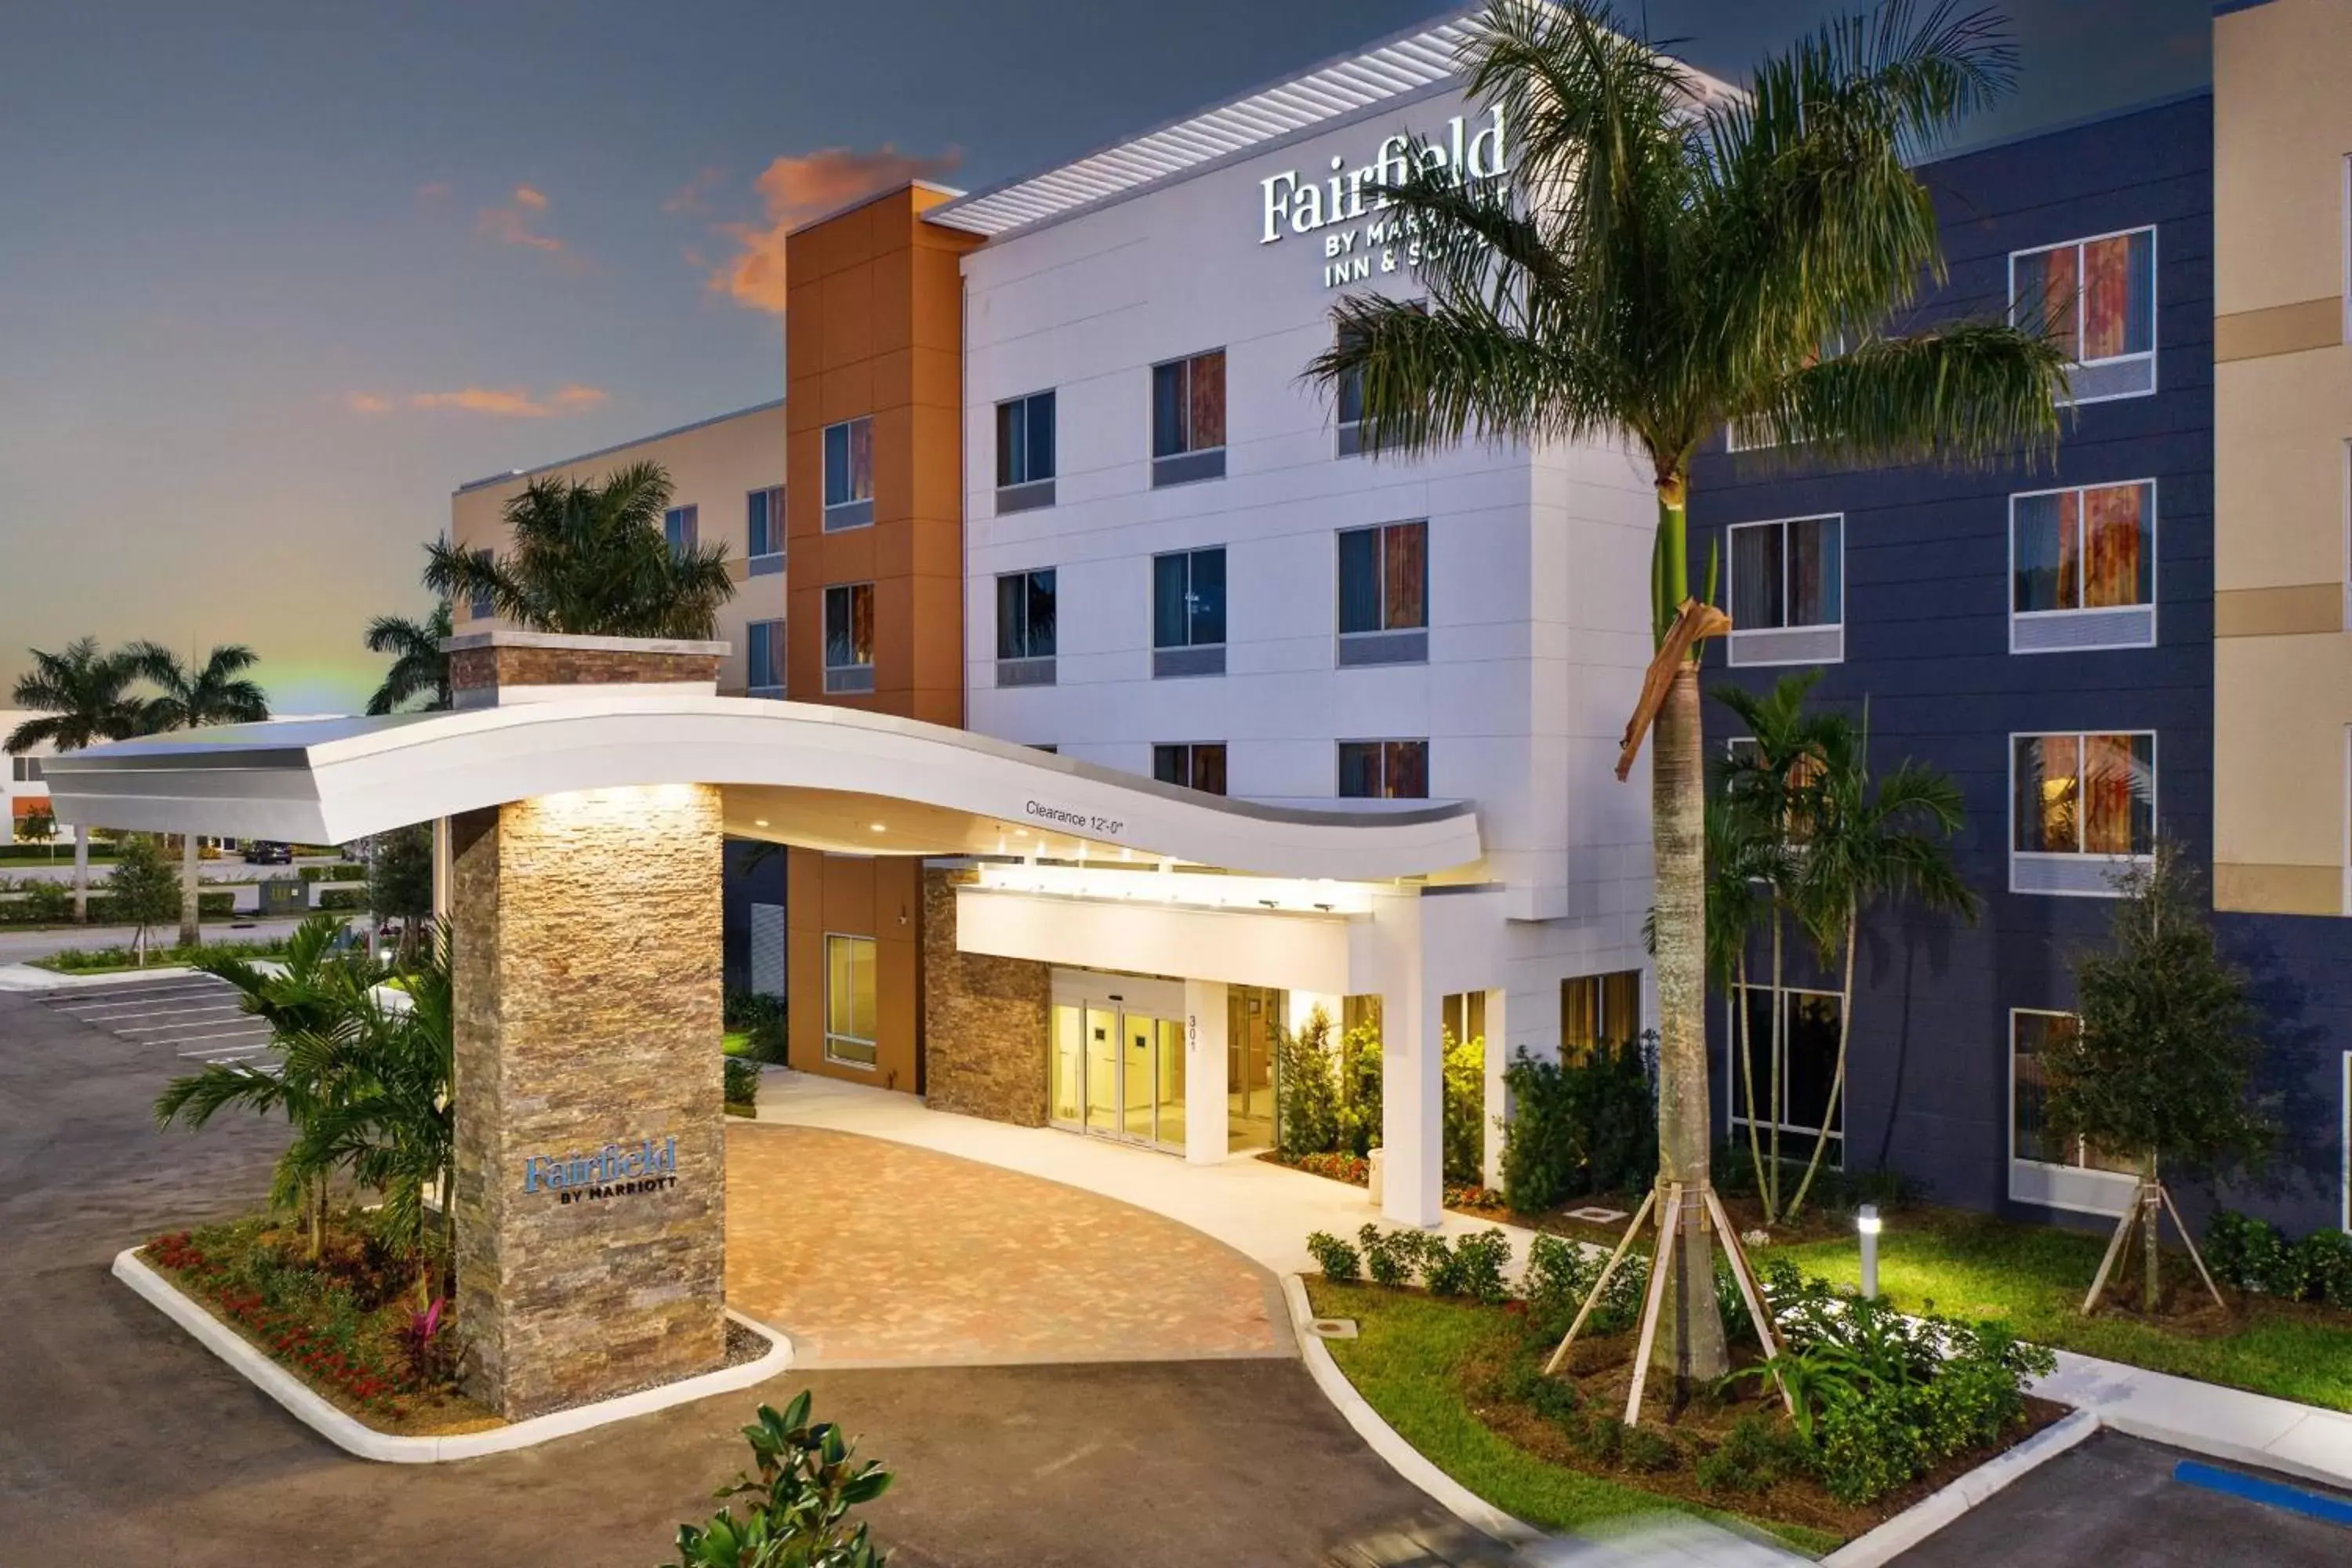 Property Building in Fairfield by Marriott Inn & Suites Deerfield Beach Boca Raton